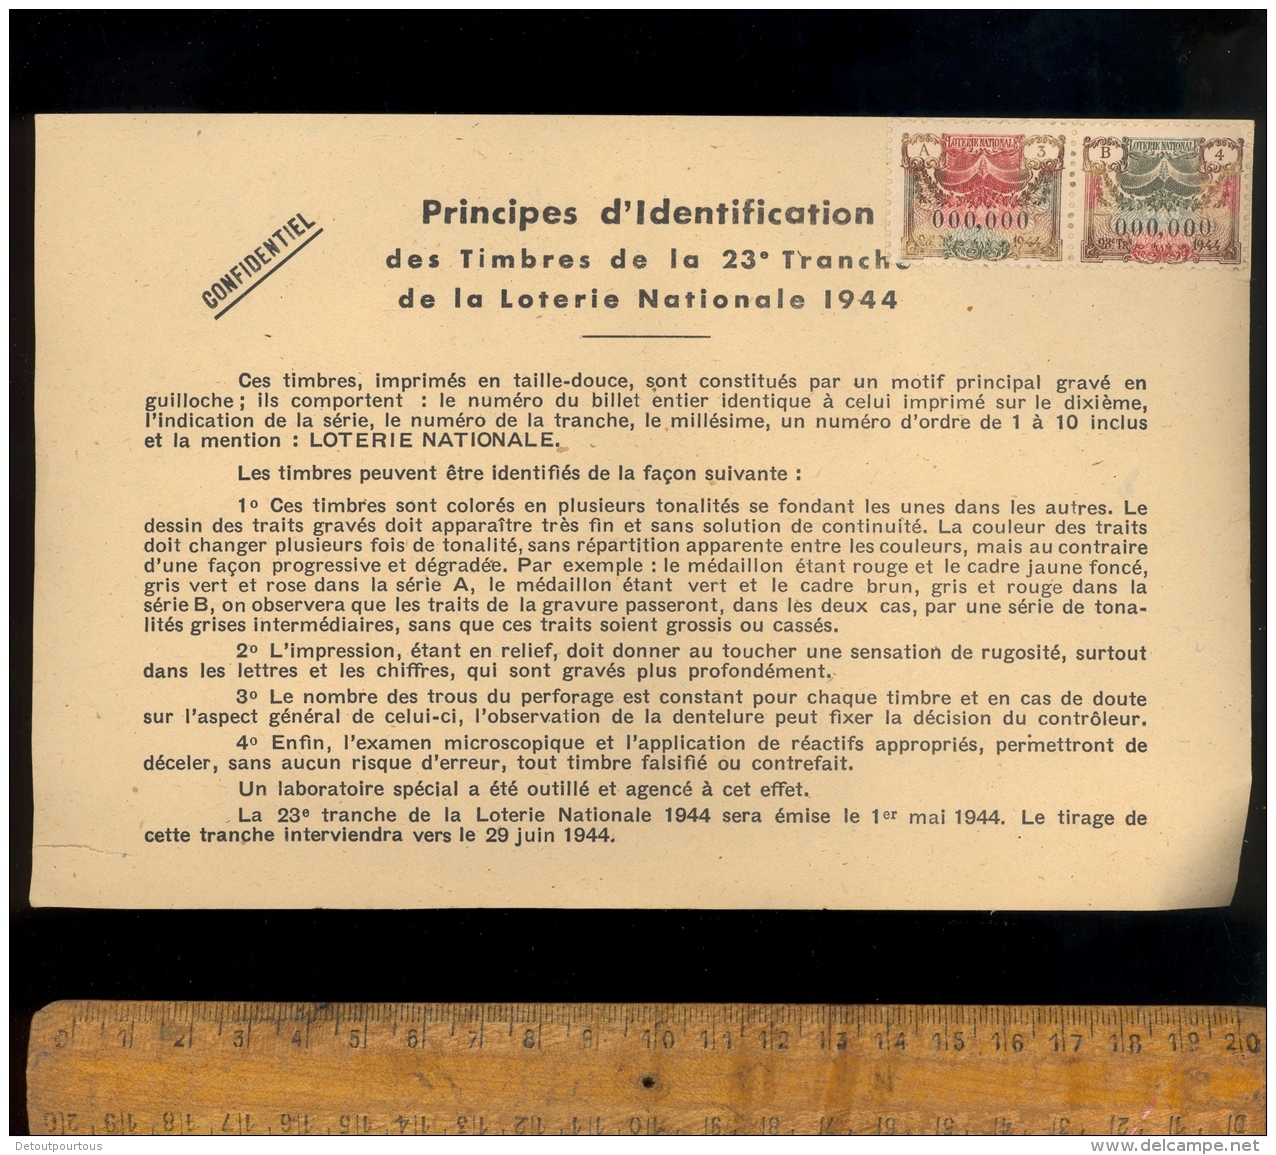 Timbres Spécimen Principes D'identificaion A3 000,000 B4  LOTERIE NATIONALE 23e Tranche 1944 - Specimen